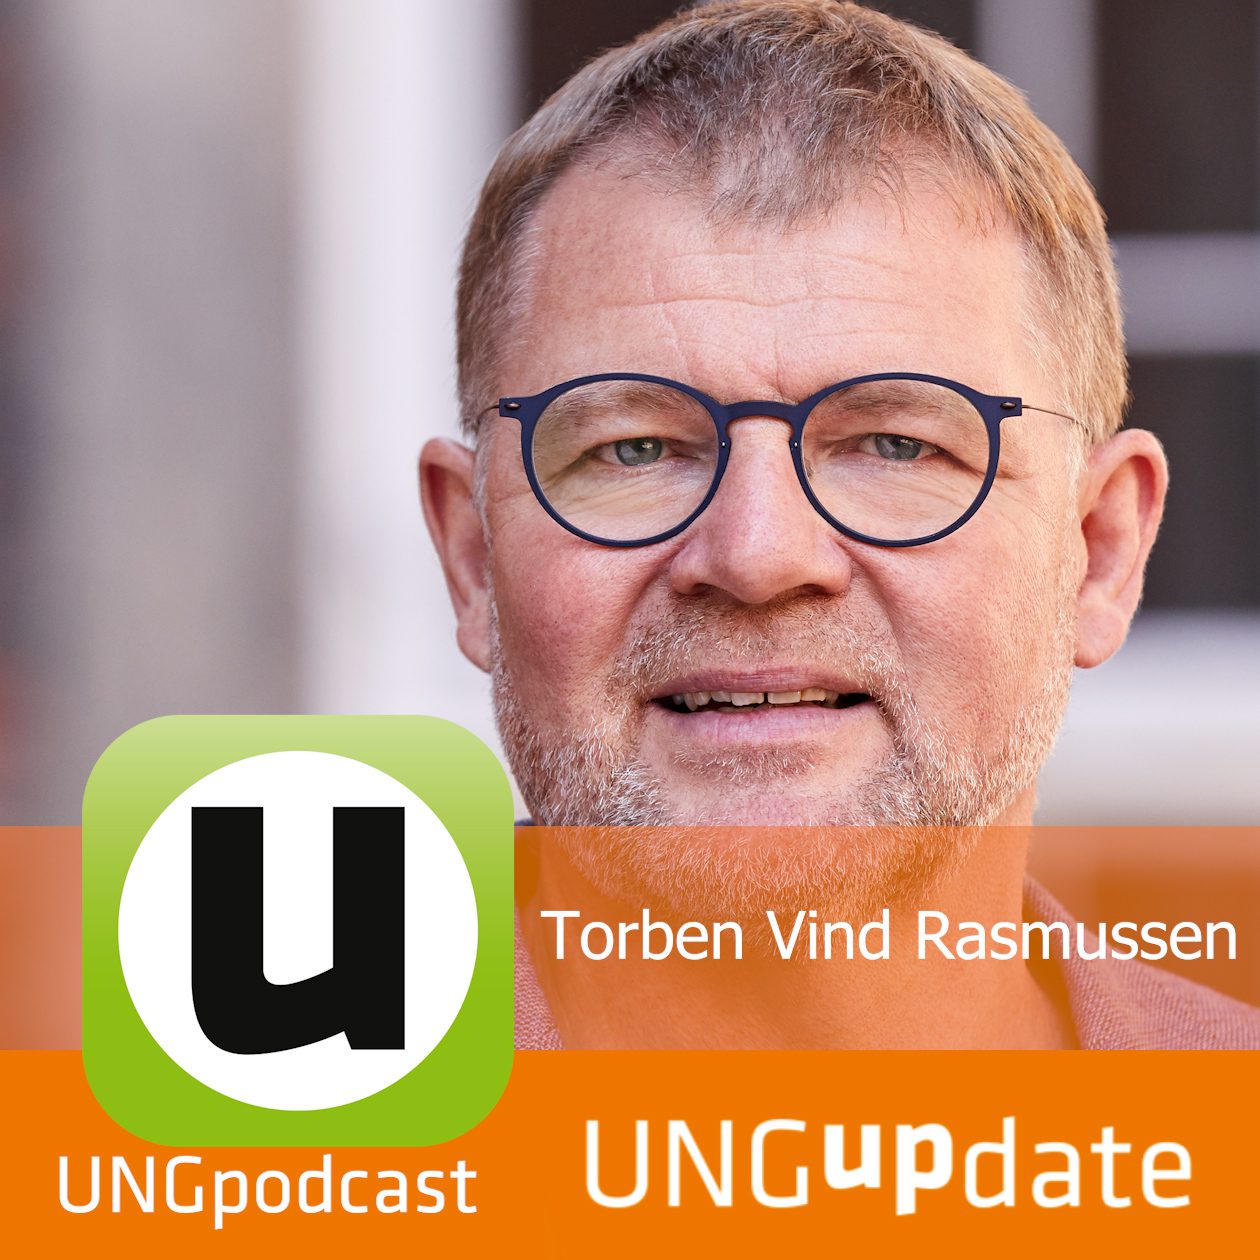 UNG UPDATE Podcast Ikon Torben Vind Rasmussen